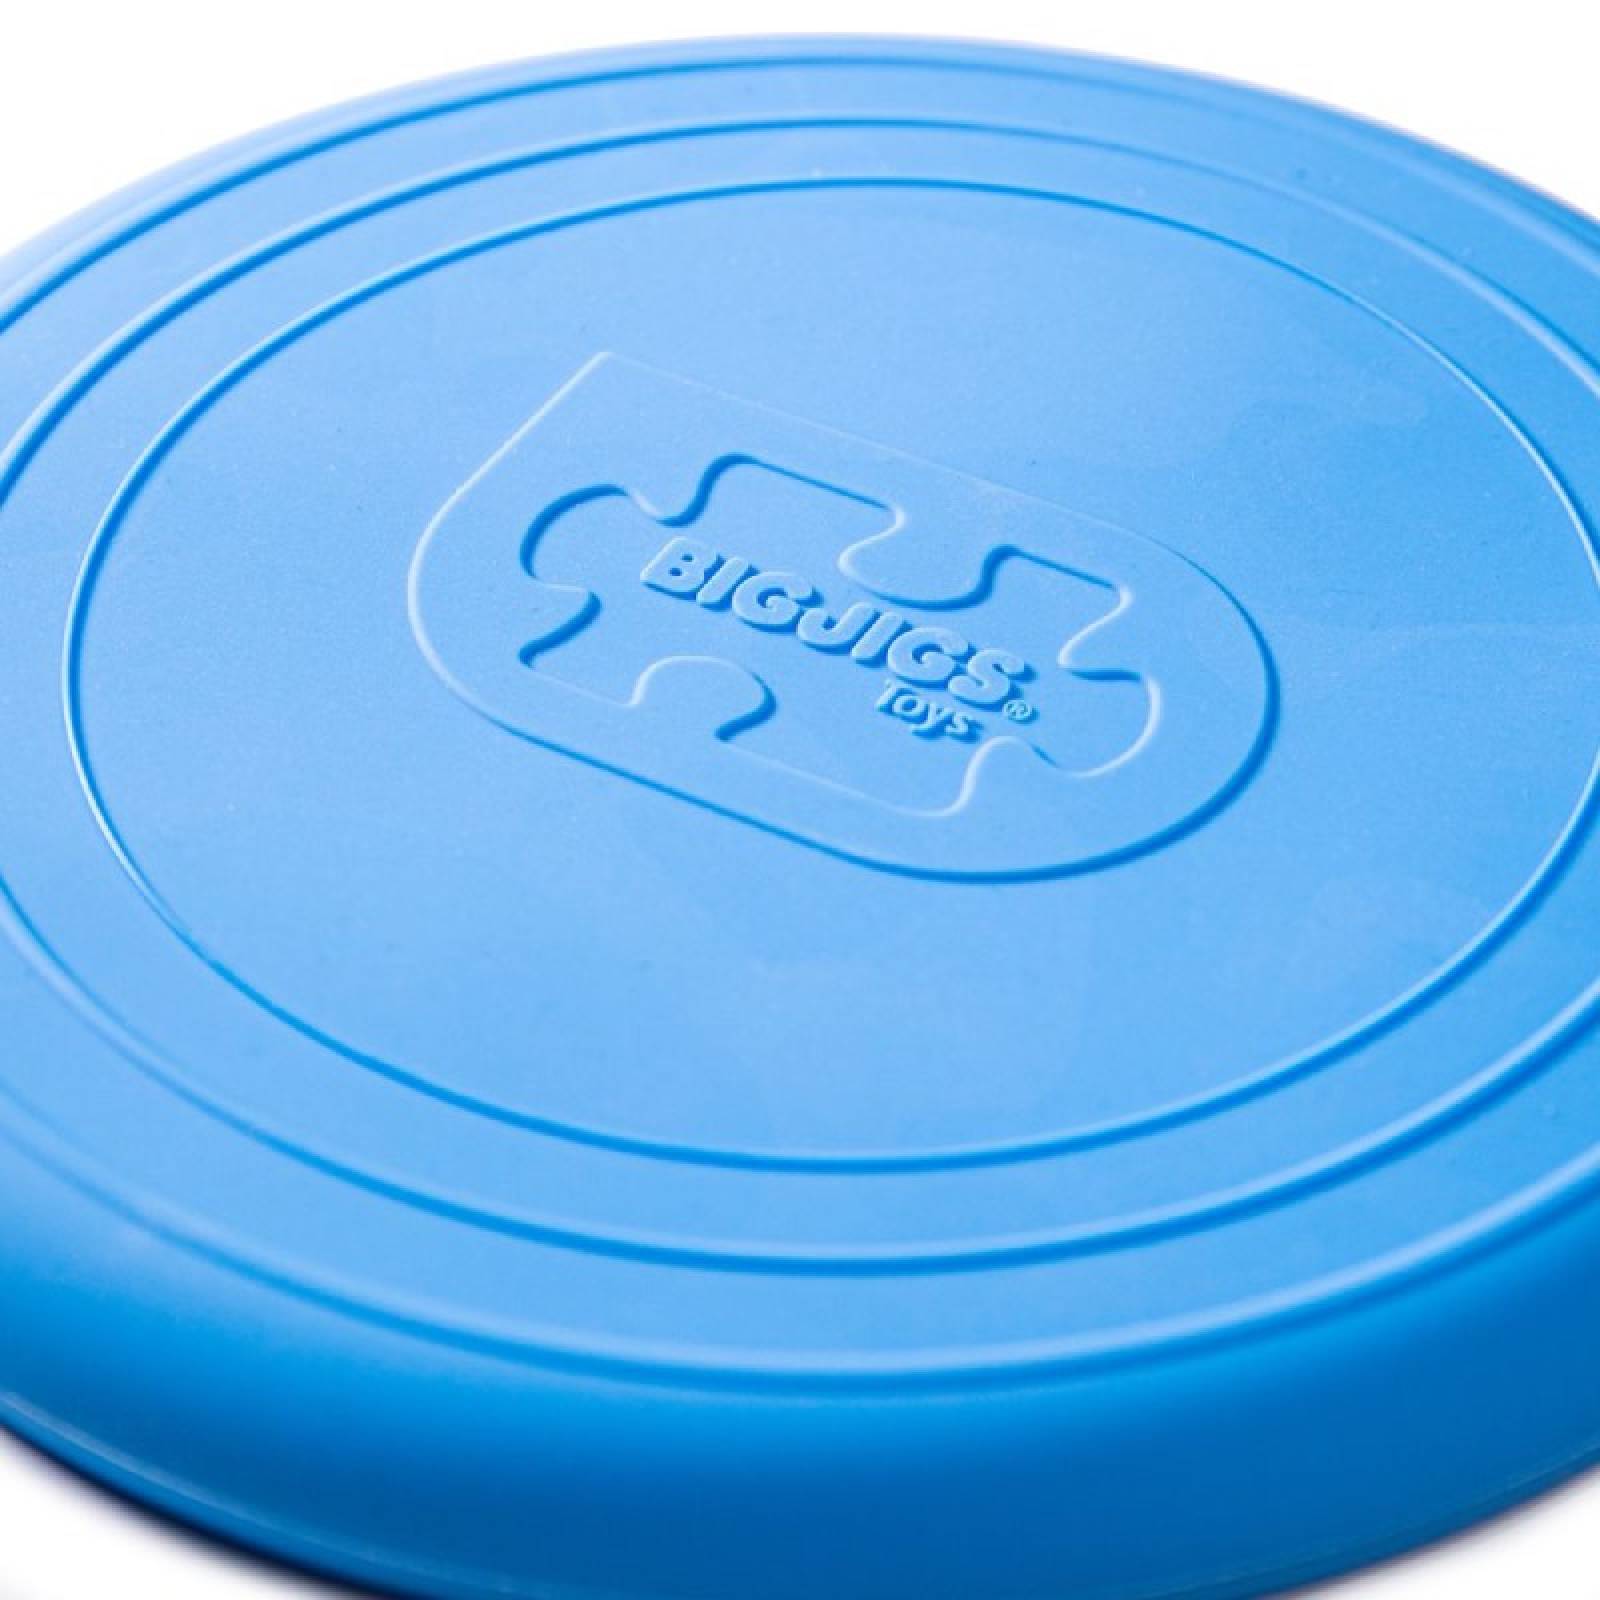 Foldable Flyer Frisbee In Ocean Blue 1+ thumbnails